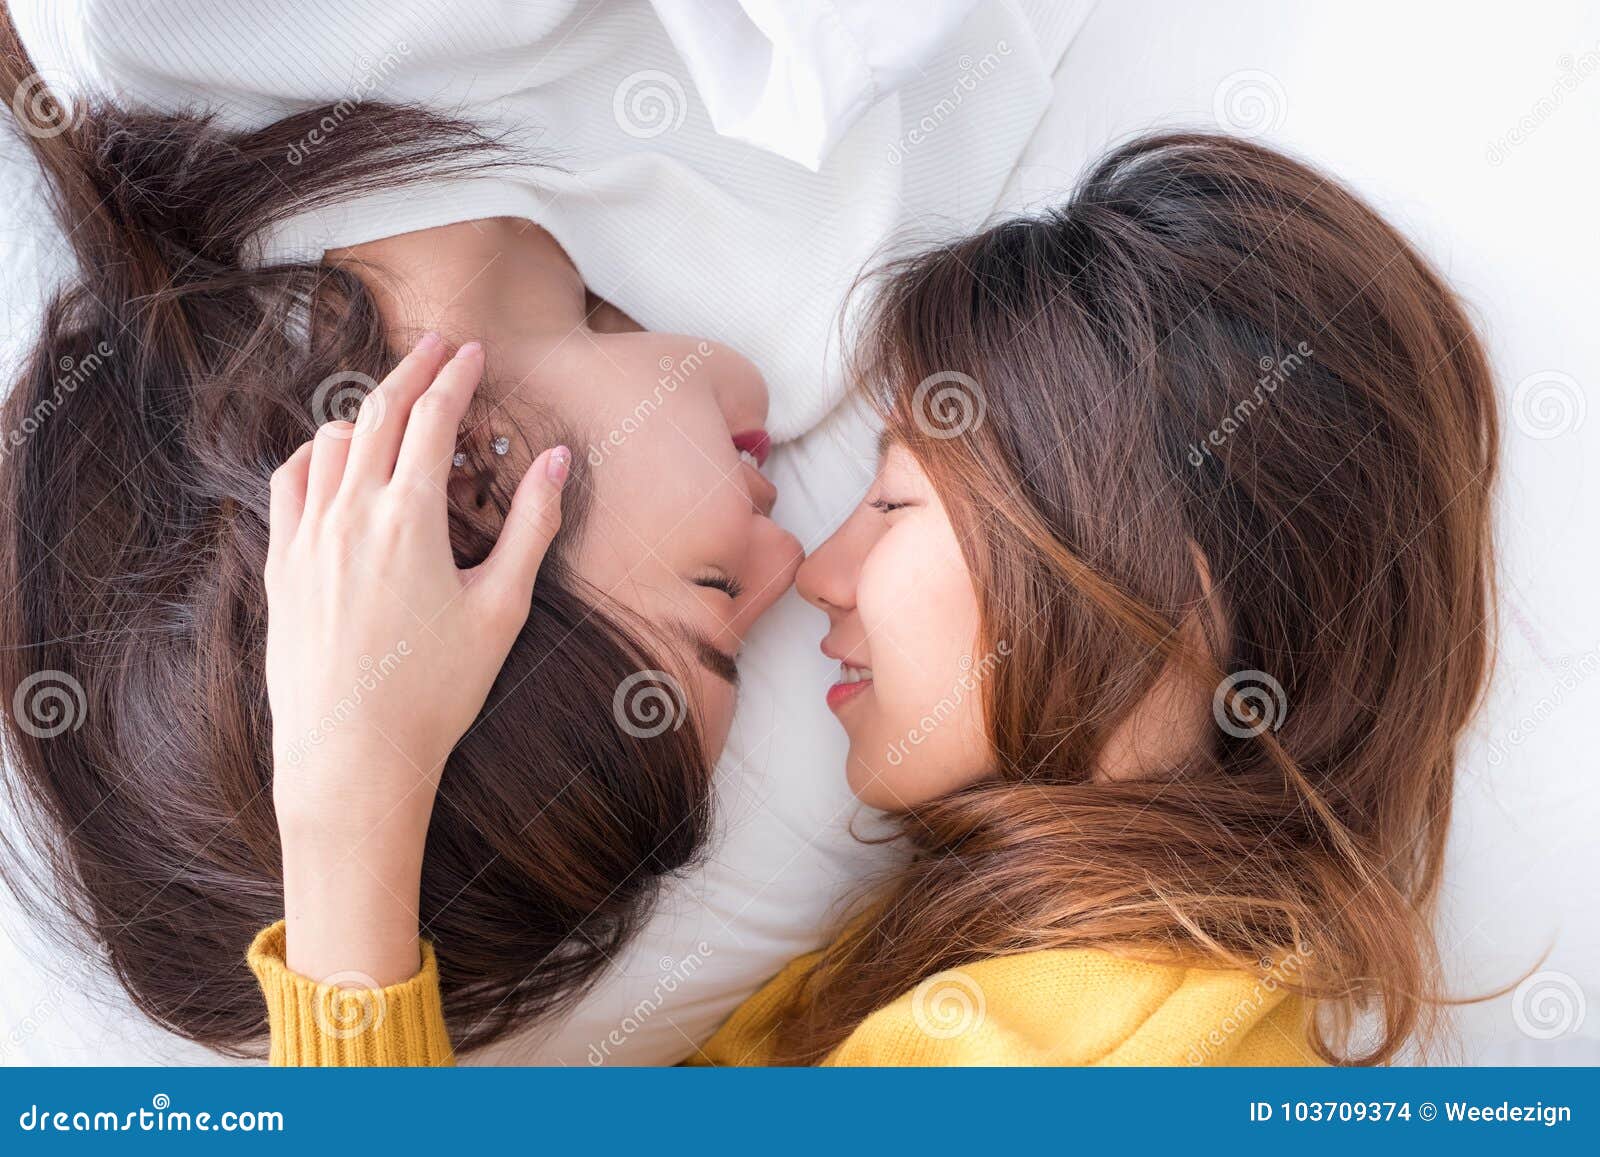 cute asian lesbian kiss xxx gallery pic